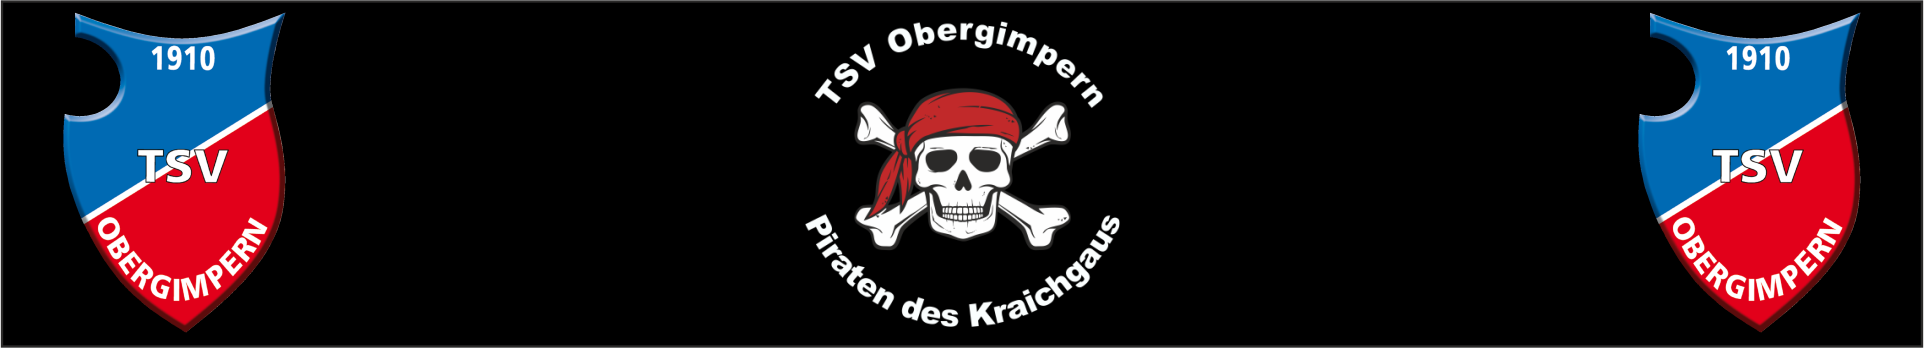 TSV Obergimpern Title Image